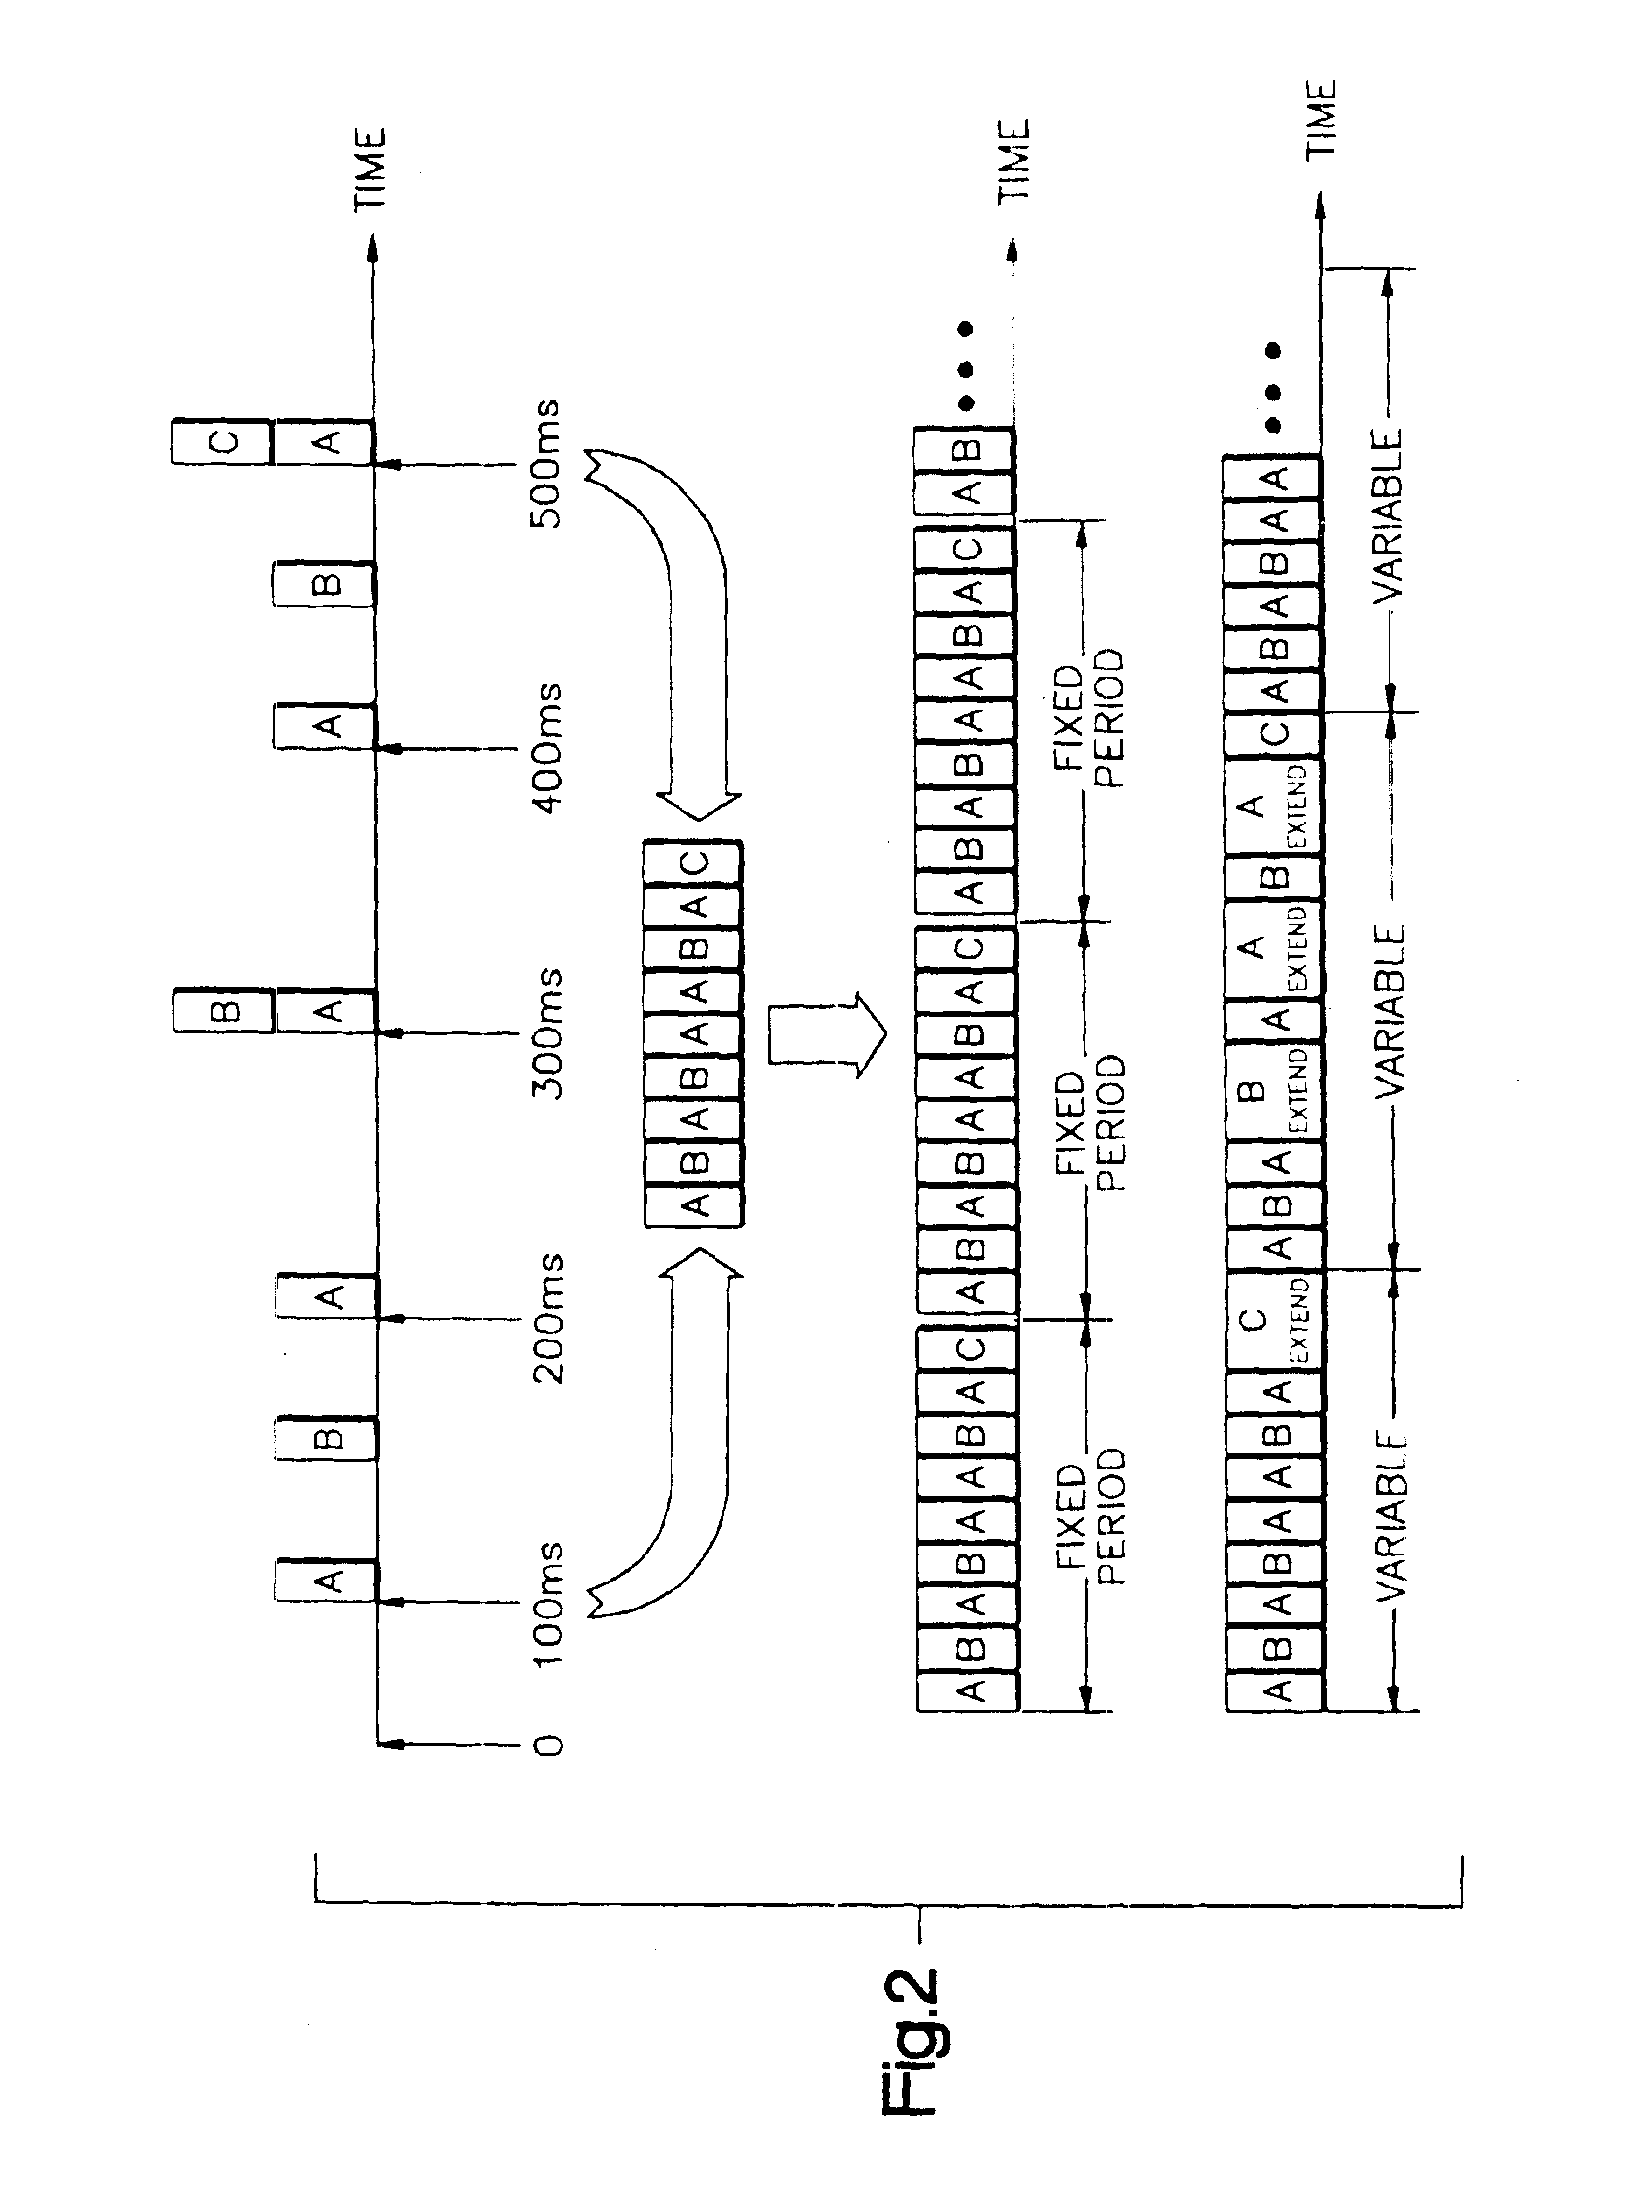 System for estimating receiver utilization